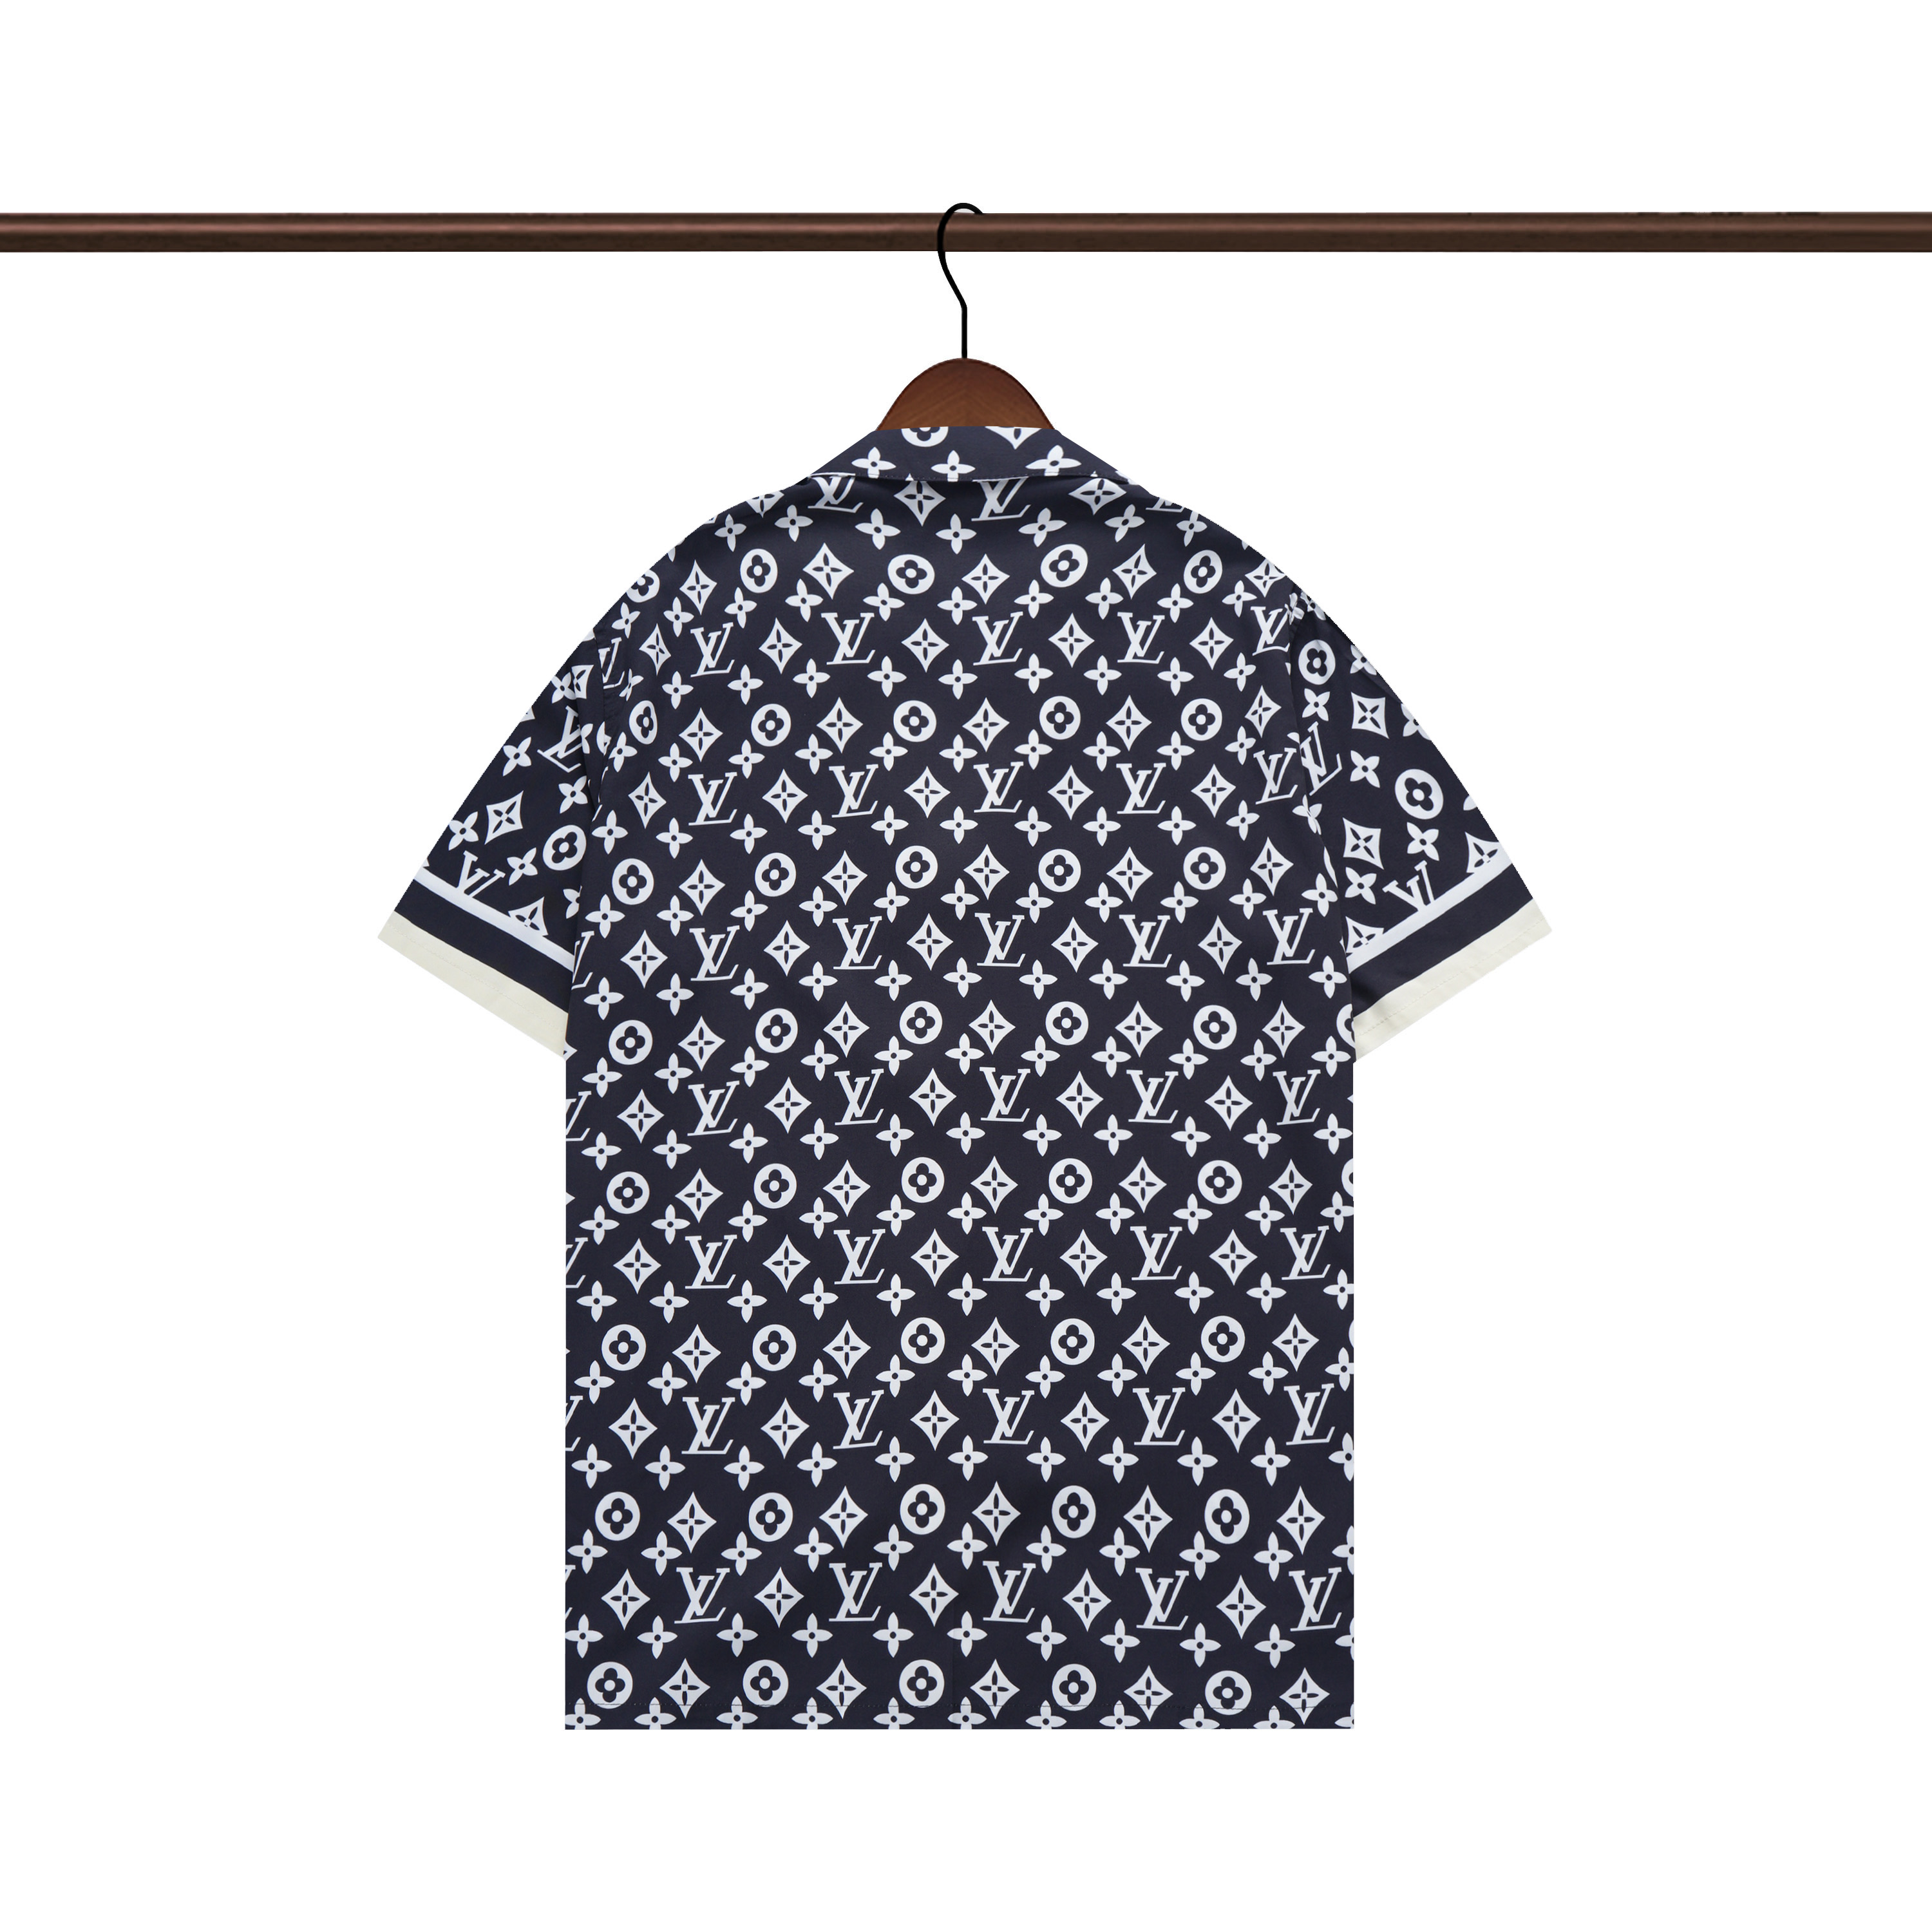 Louis Vuitton Short Sleeve Shirts Men # 267650, cheap Louis Vuitton Shirts, only $33!